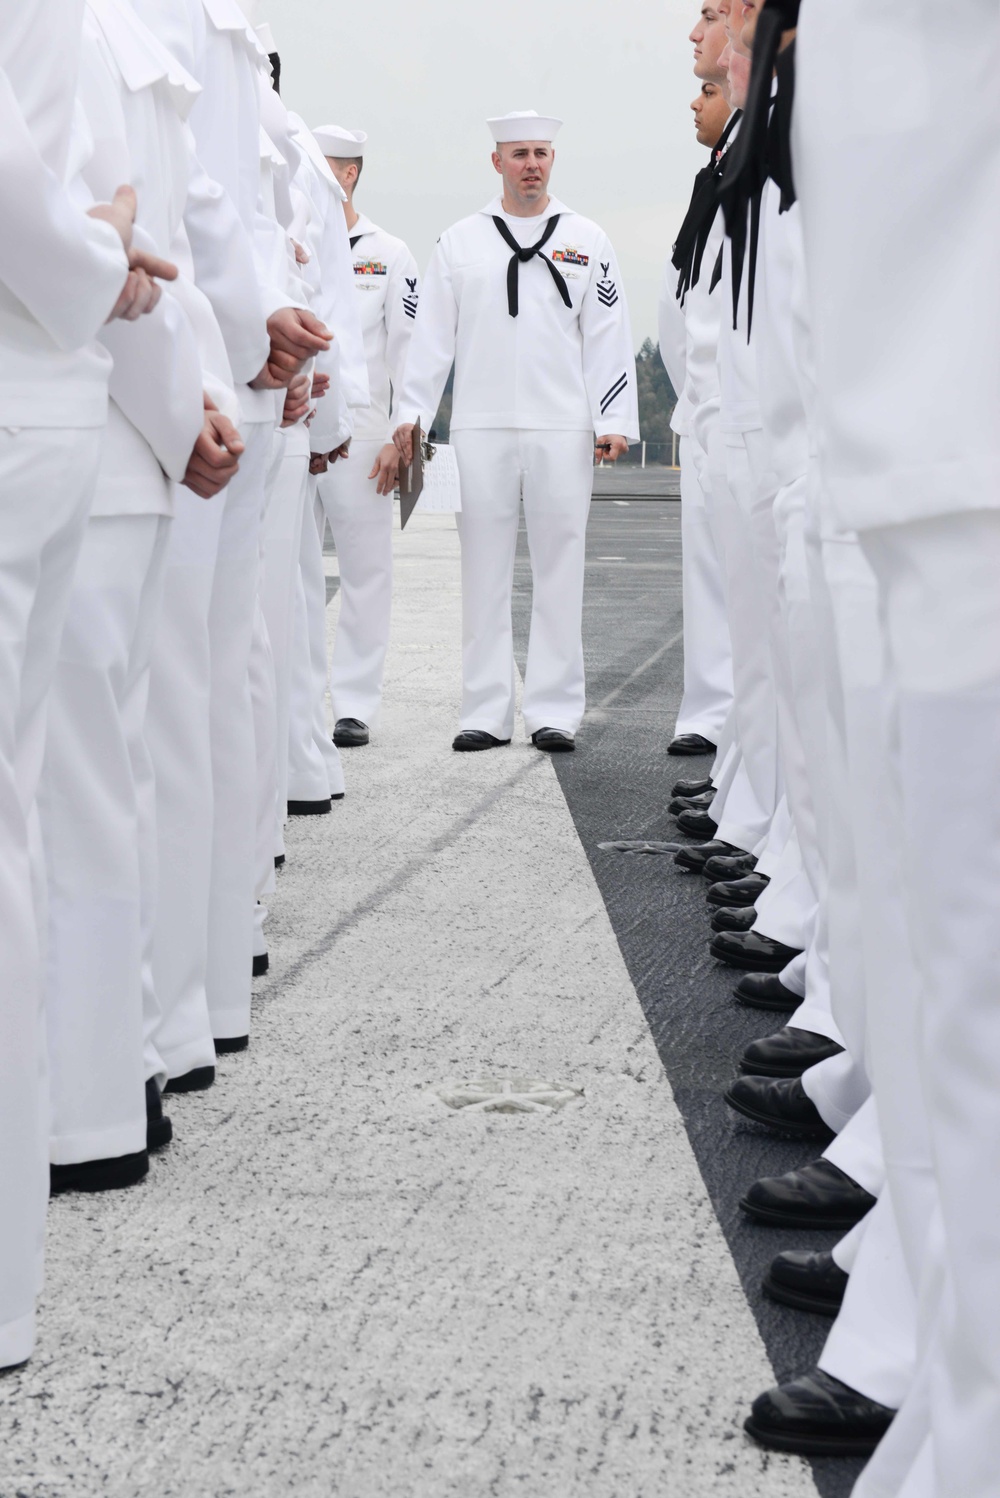 USS John C. Stennis dress white inspection